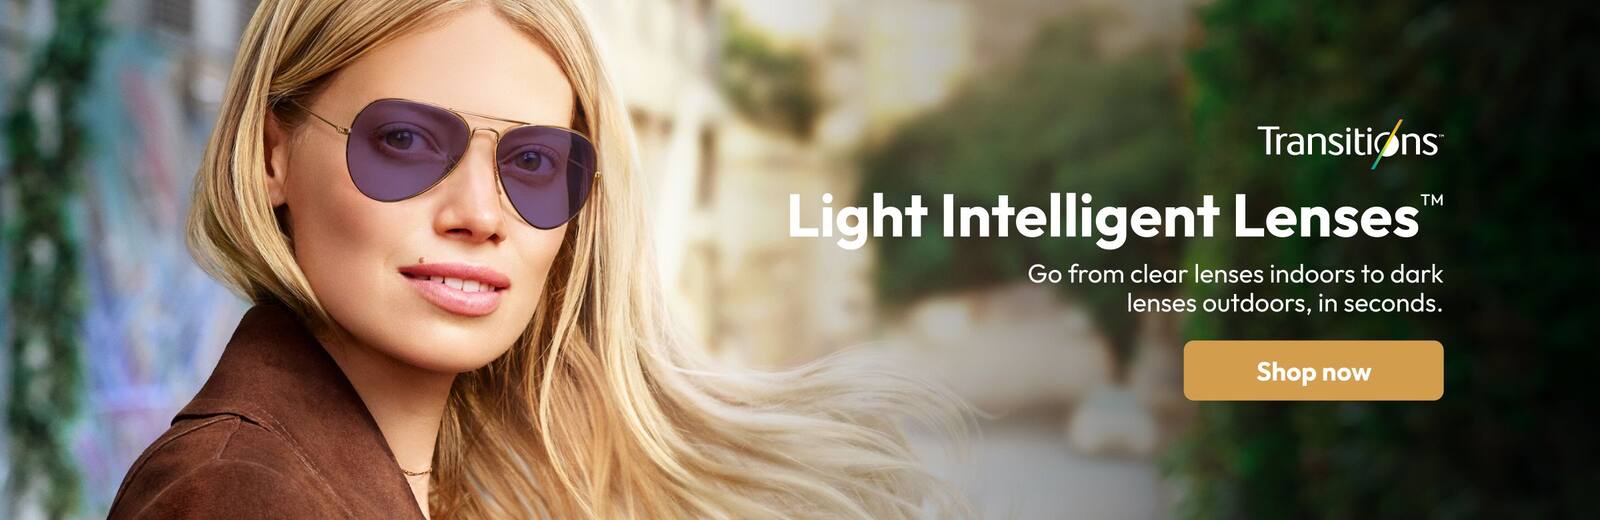 Light Intelligent Lenses™